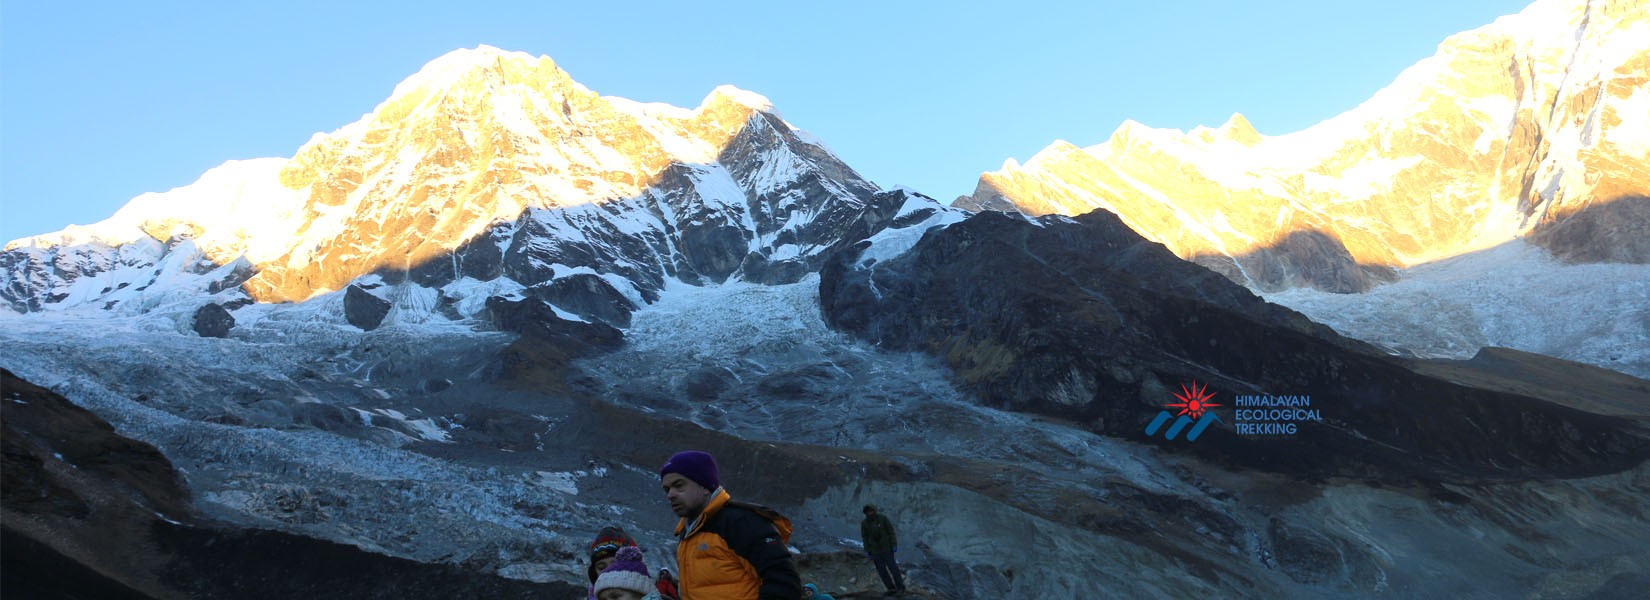 Annapurna Base Camp Trek -10 days